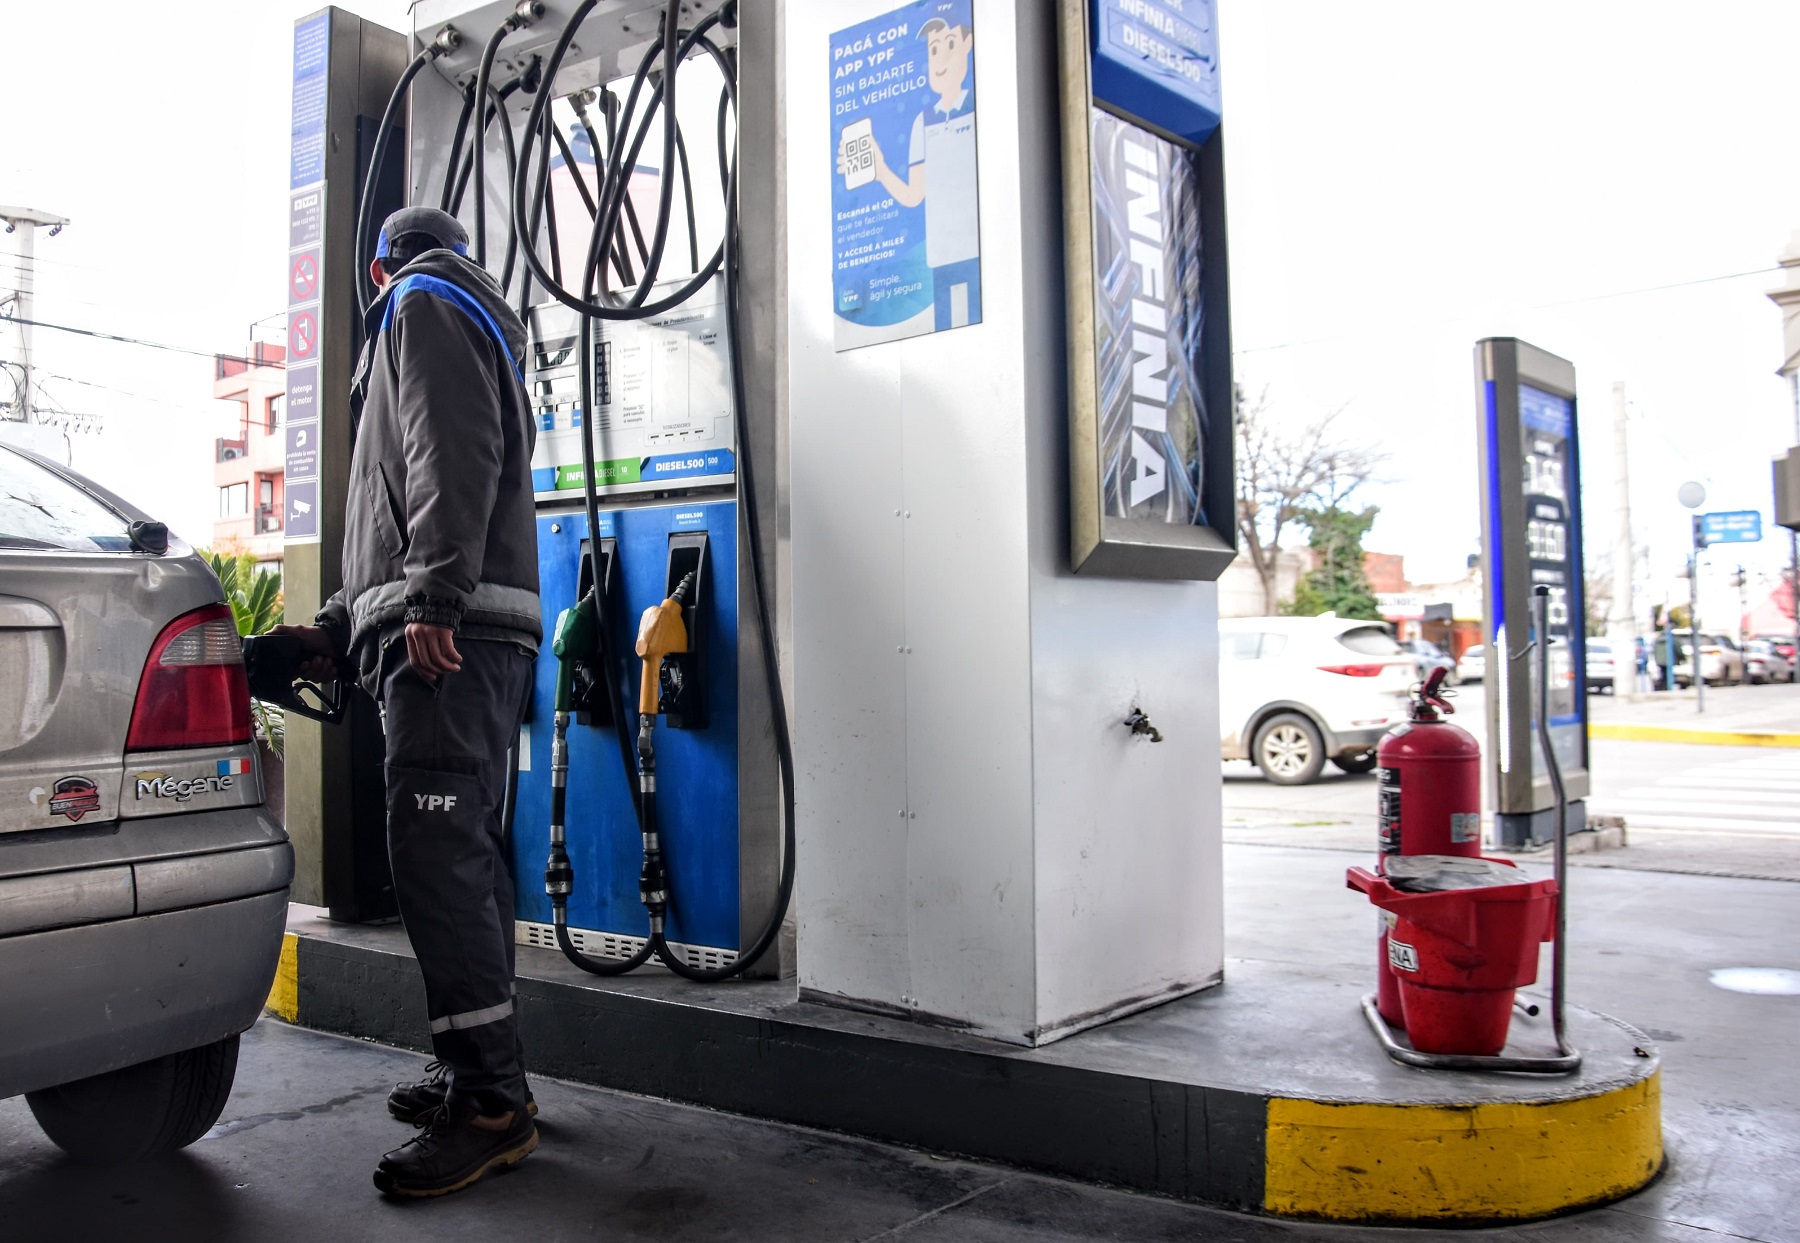 Tasa vial en Neuquén: cuánto costarán la nafta y gasoil con el nuevo impuesto municipal. Foto: Cecilia Maletti